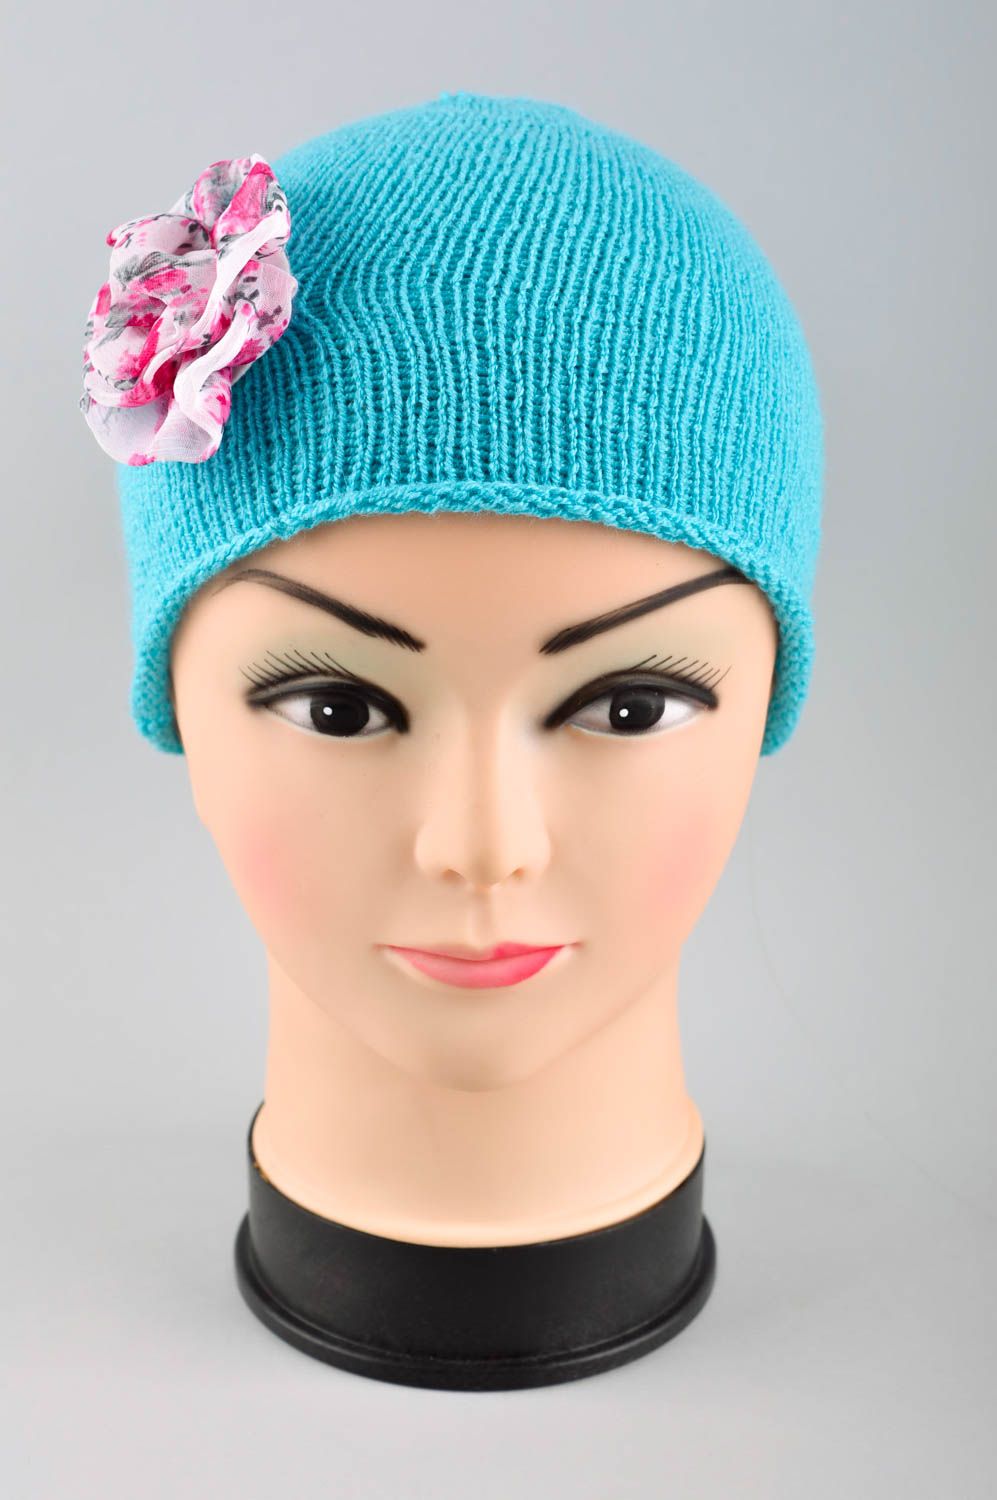 Шапка для девочки ручной работы вязаная шапка голубая зимняя шапка с цветком фото 2